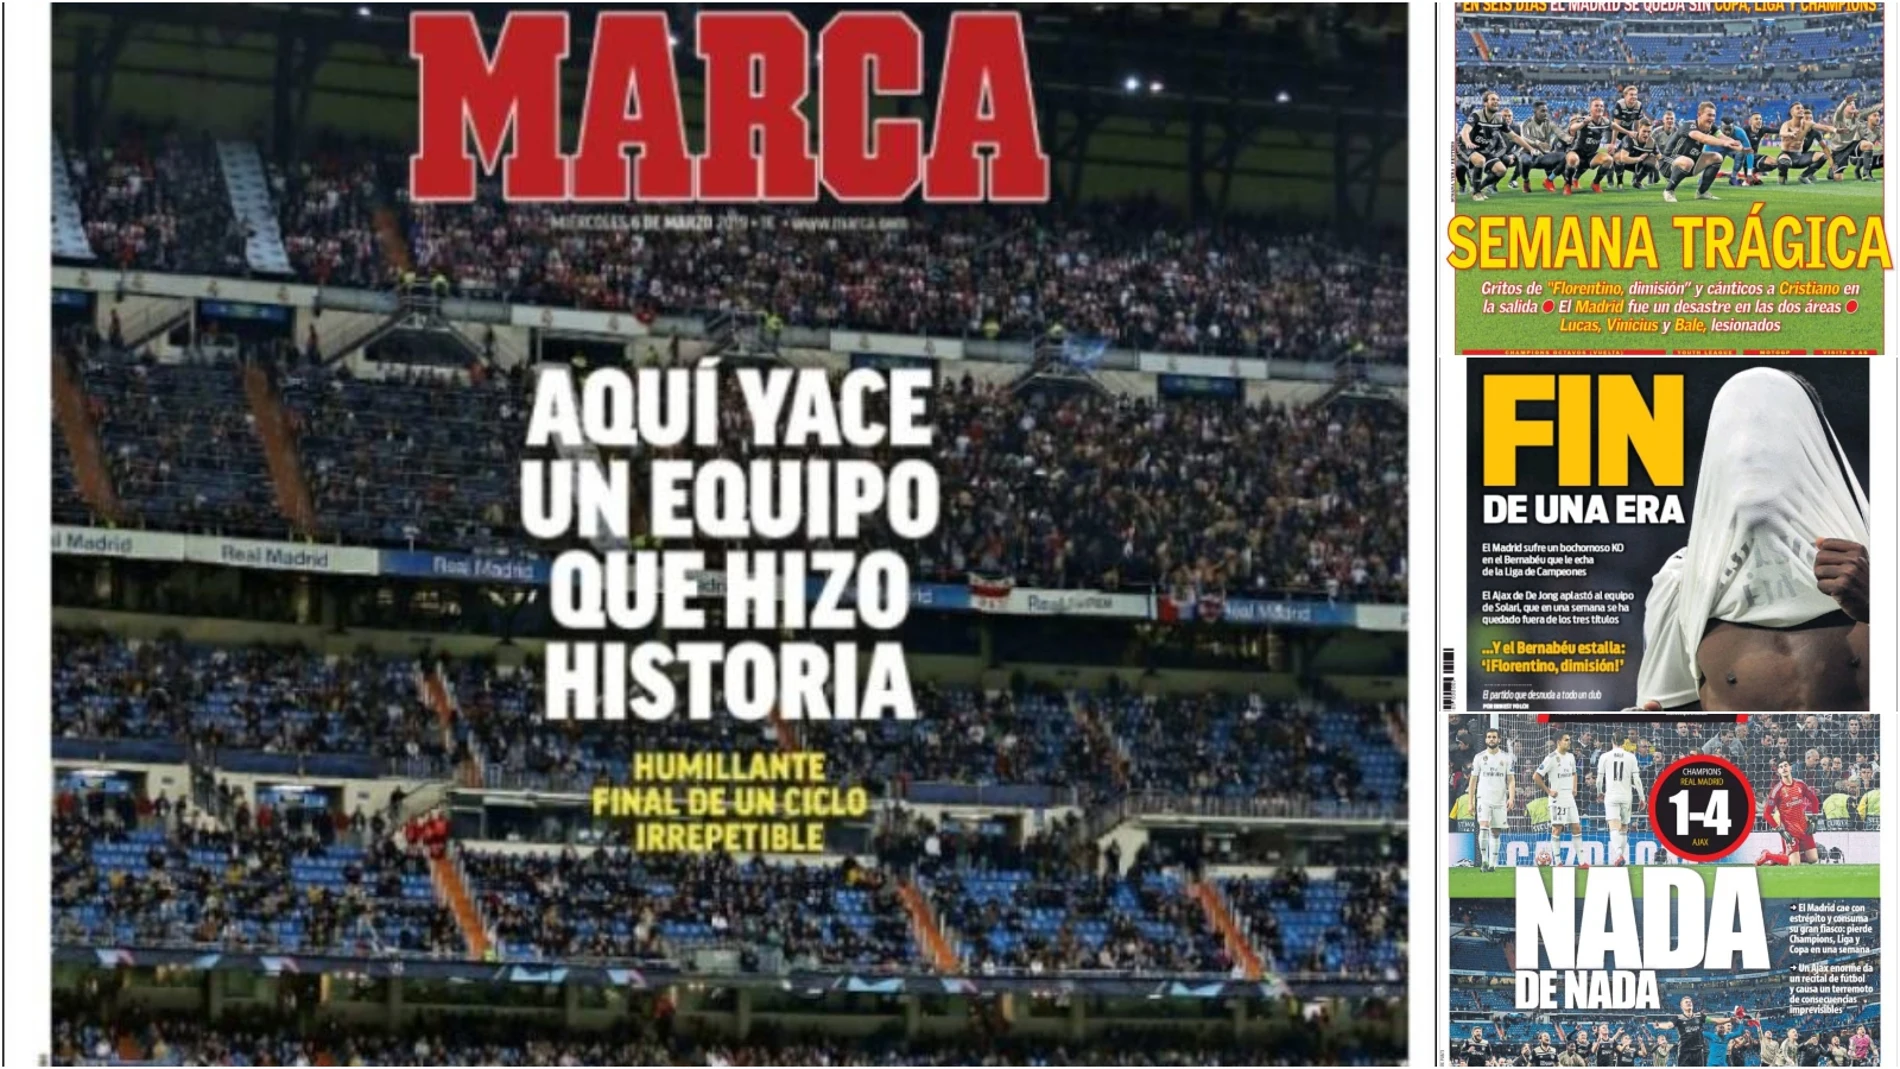 La eliminación del Real Madrid, en la prensa deportiva